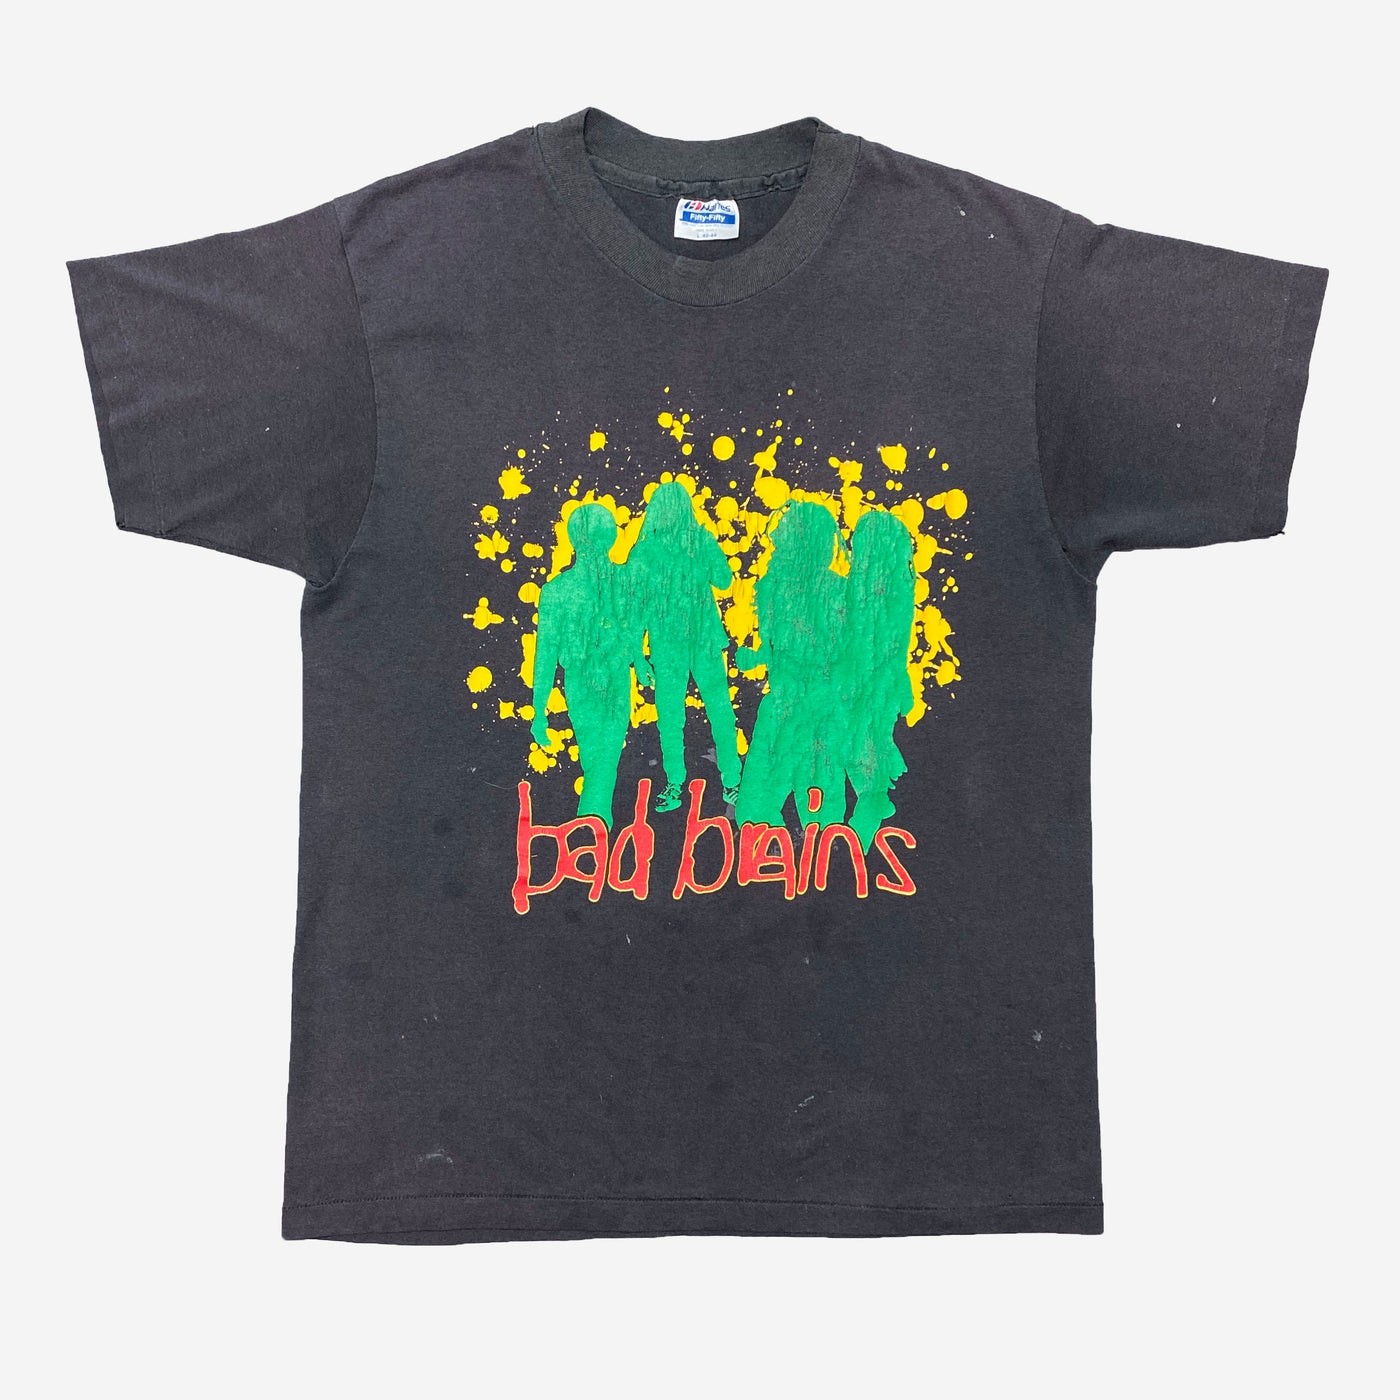 Vintage Bad Brains I Against I T-Shirt